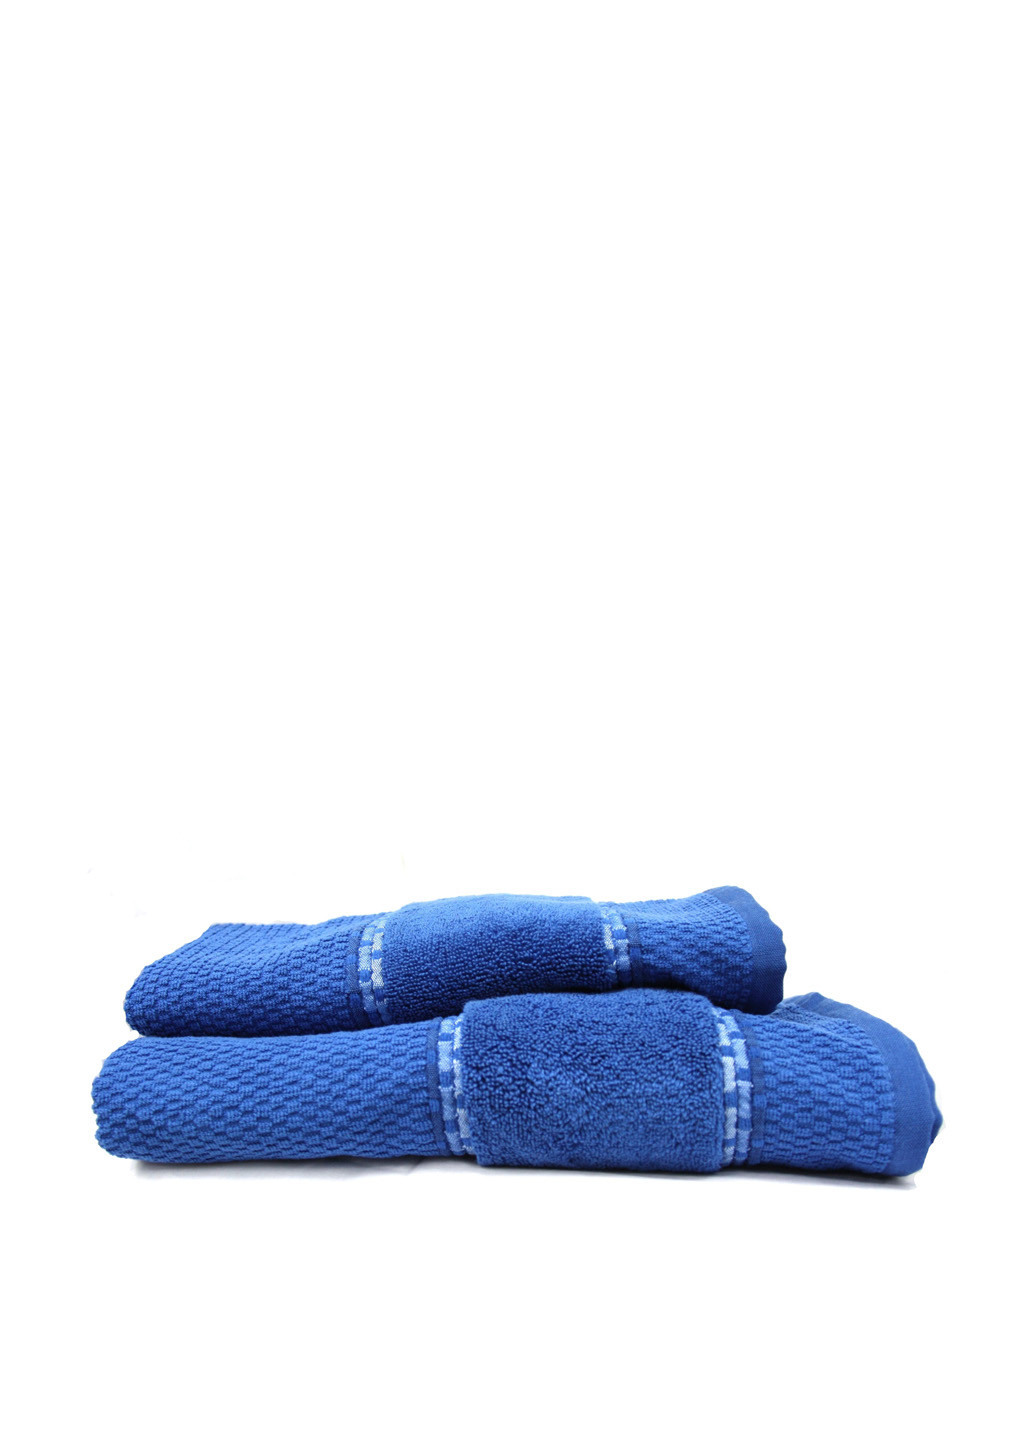 Shamrock полотенце, 70х140 см однотонный синий производство - Турция